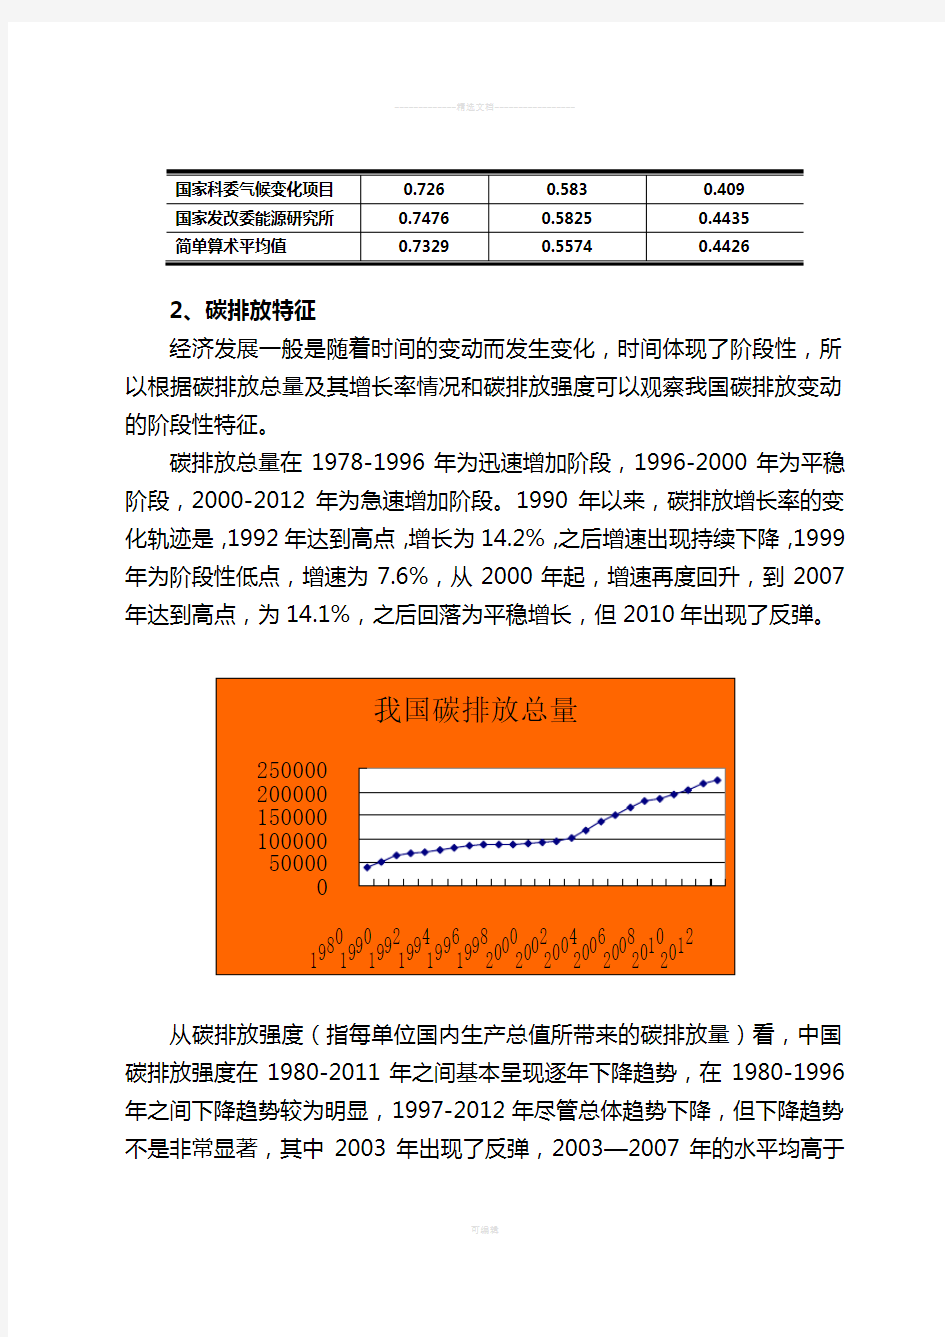 中国碳排放分析